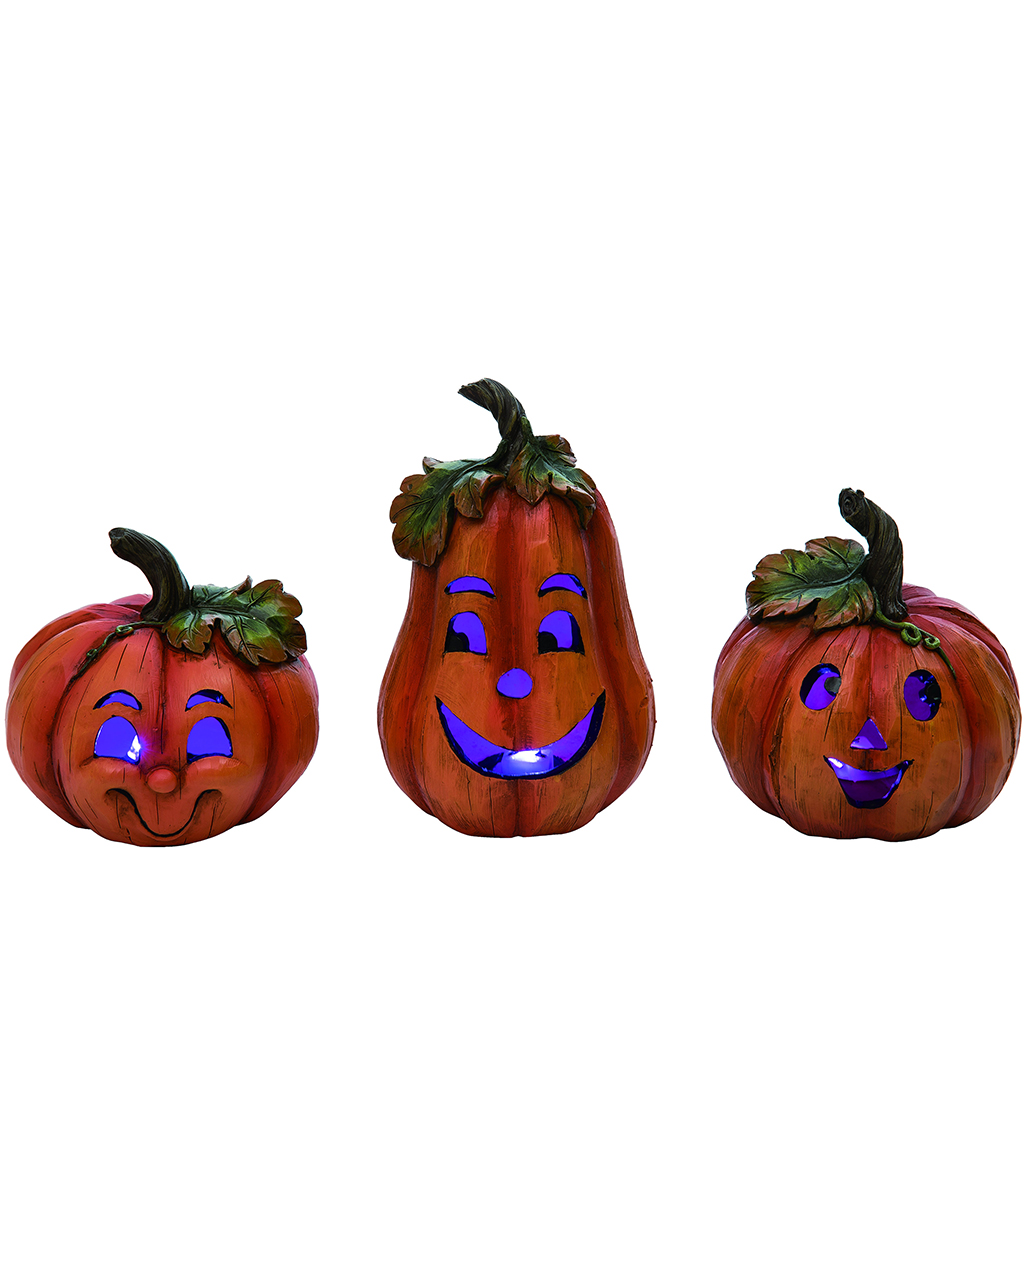 Halloween Pumpkin Decorative Figure In Of Wood Set Look Buy 3 ✓